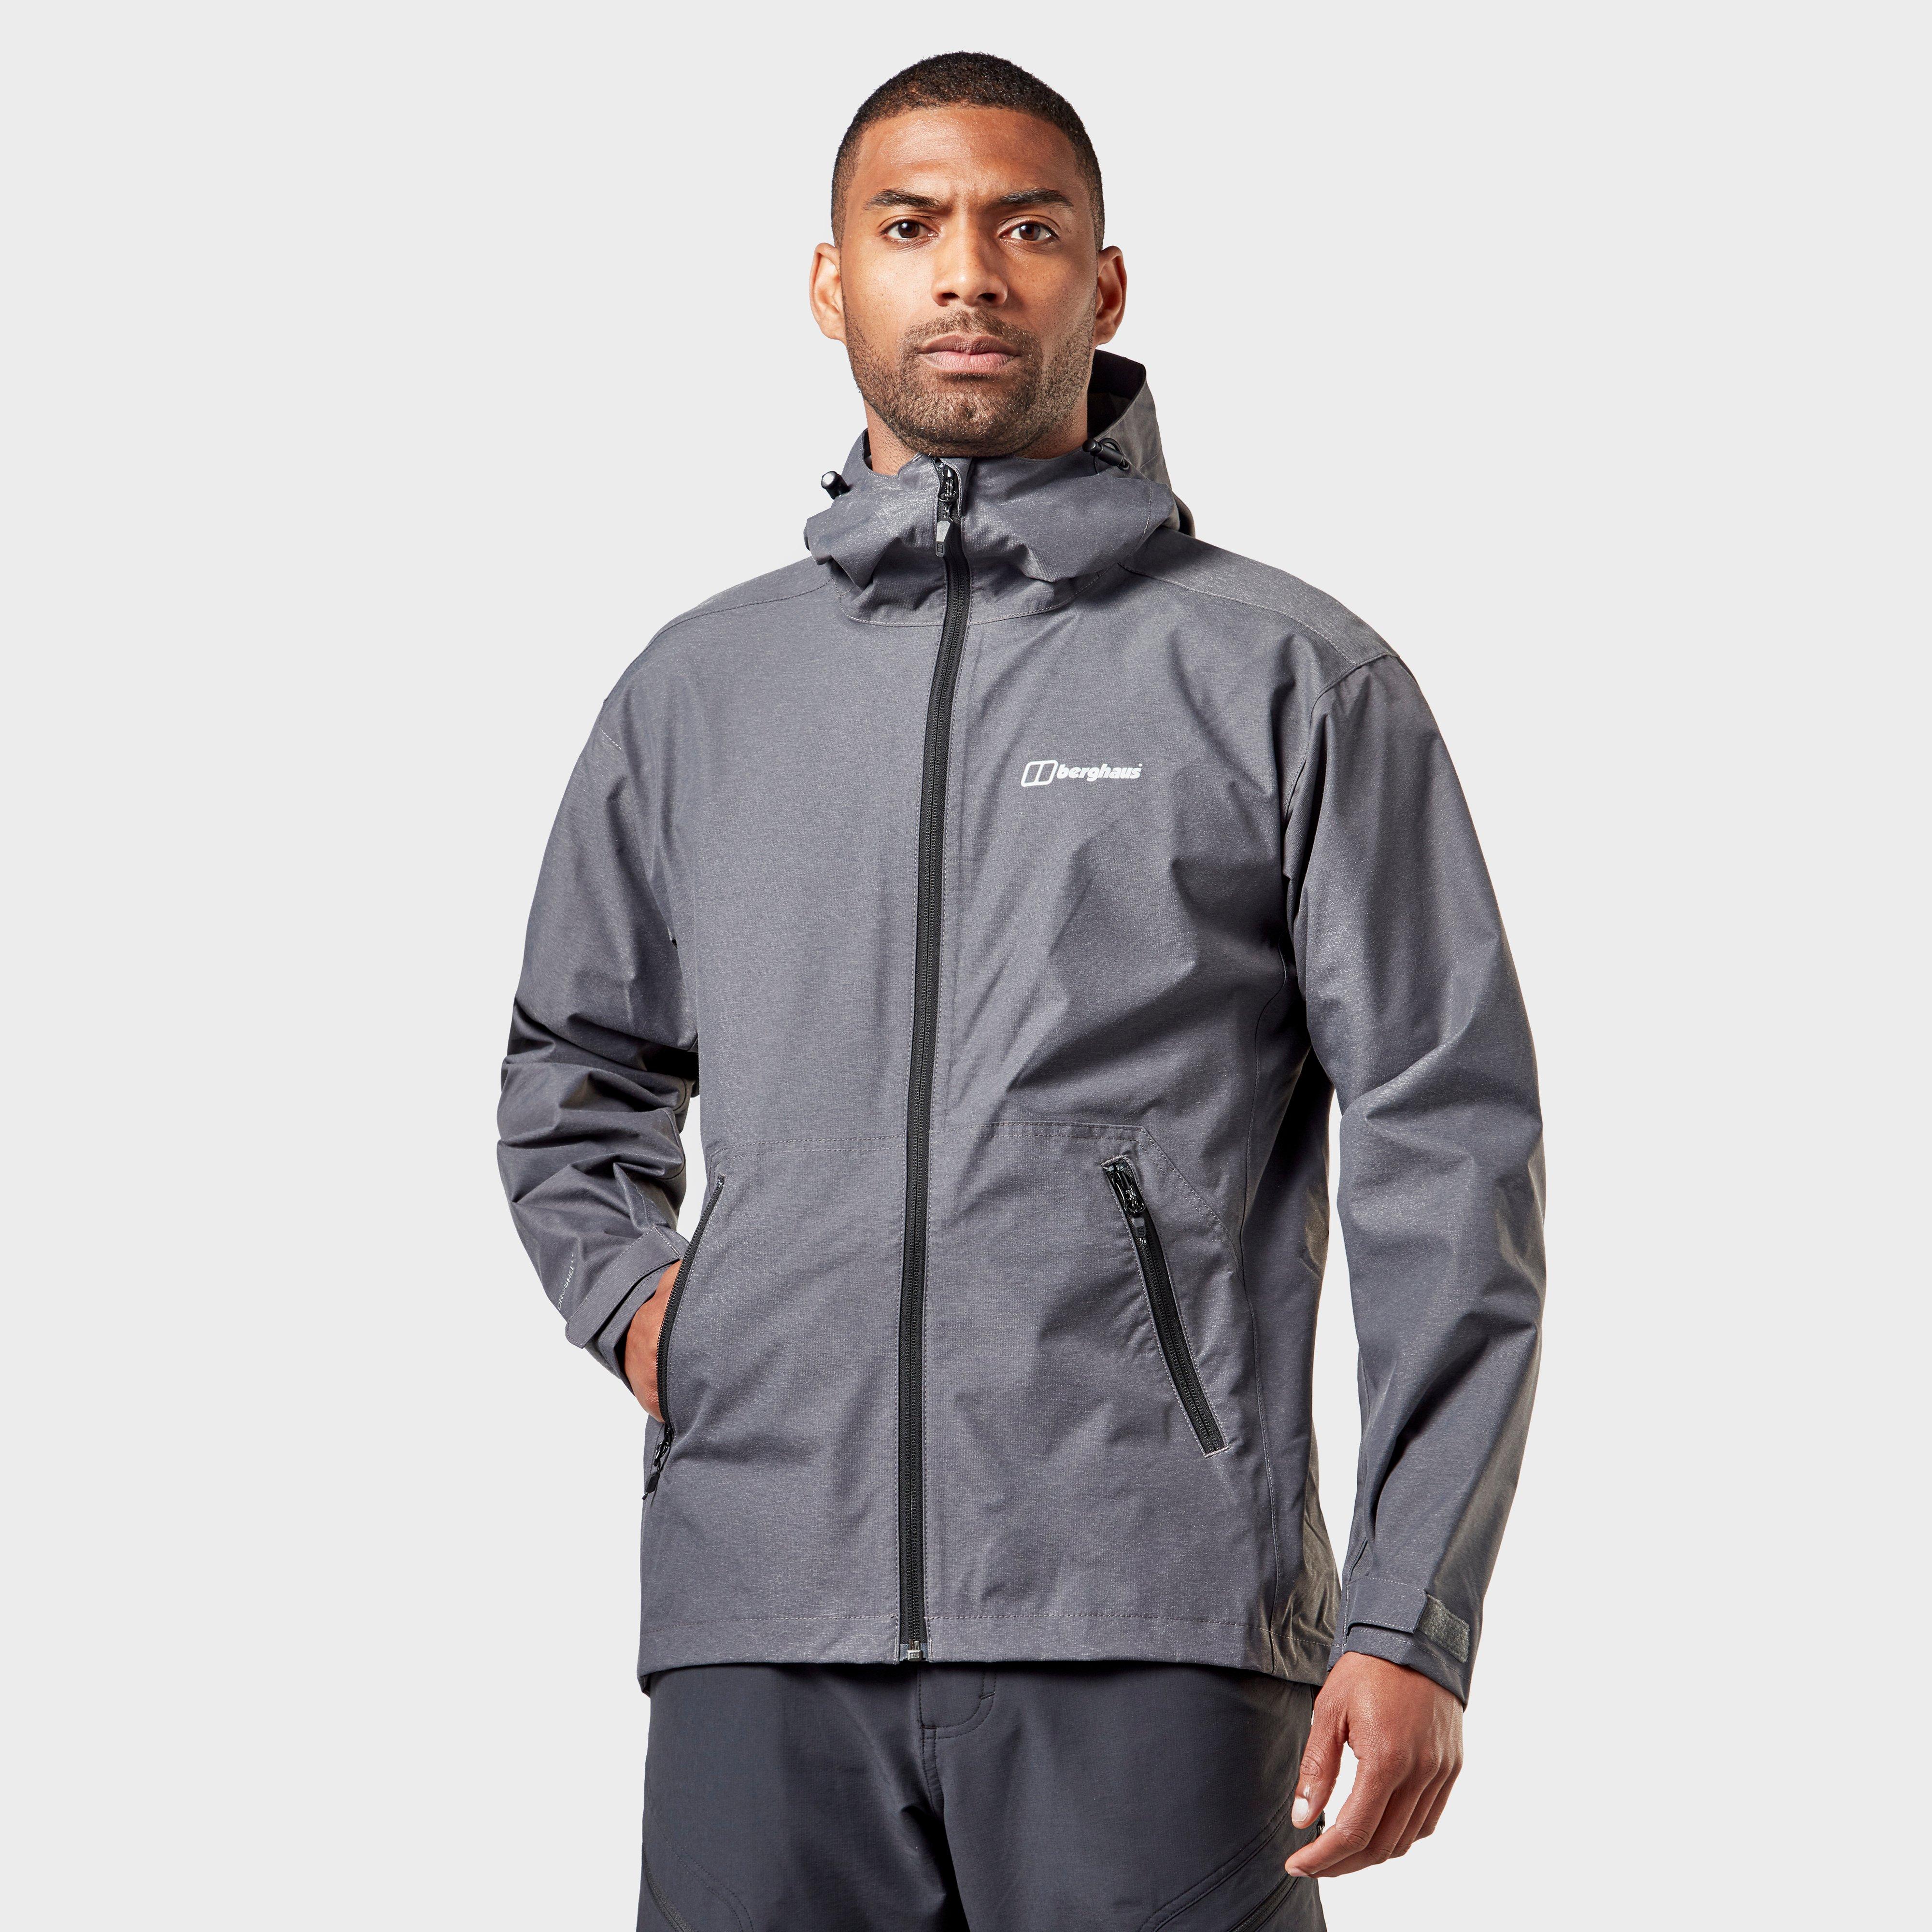 Berghaus Stormcloud Jacket – Men’s | jacketcompare.co.uk